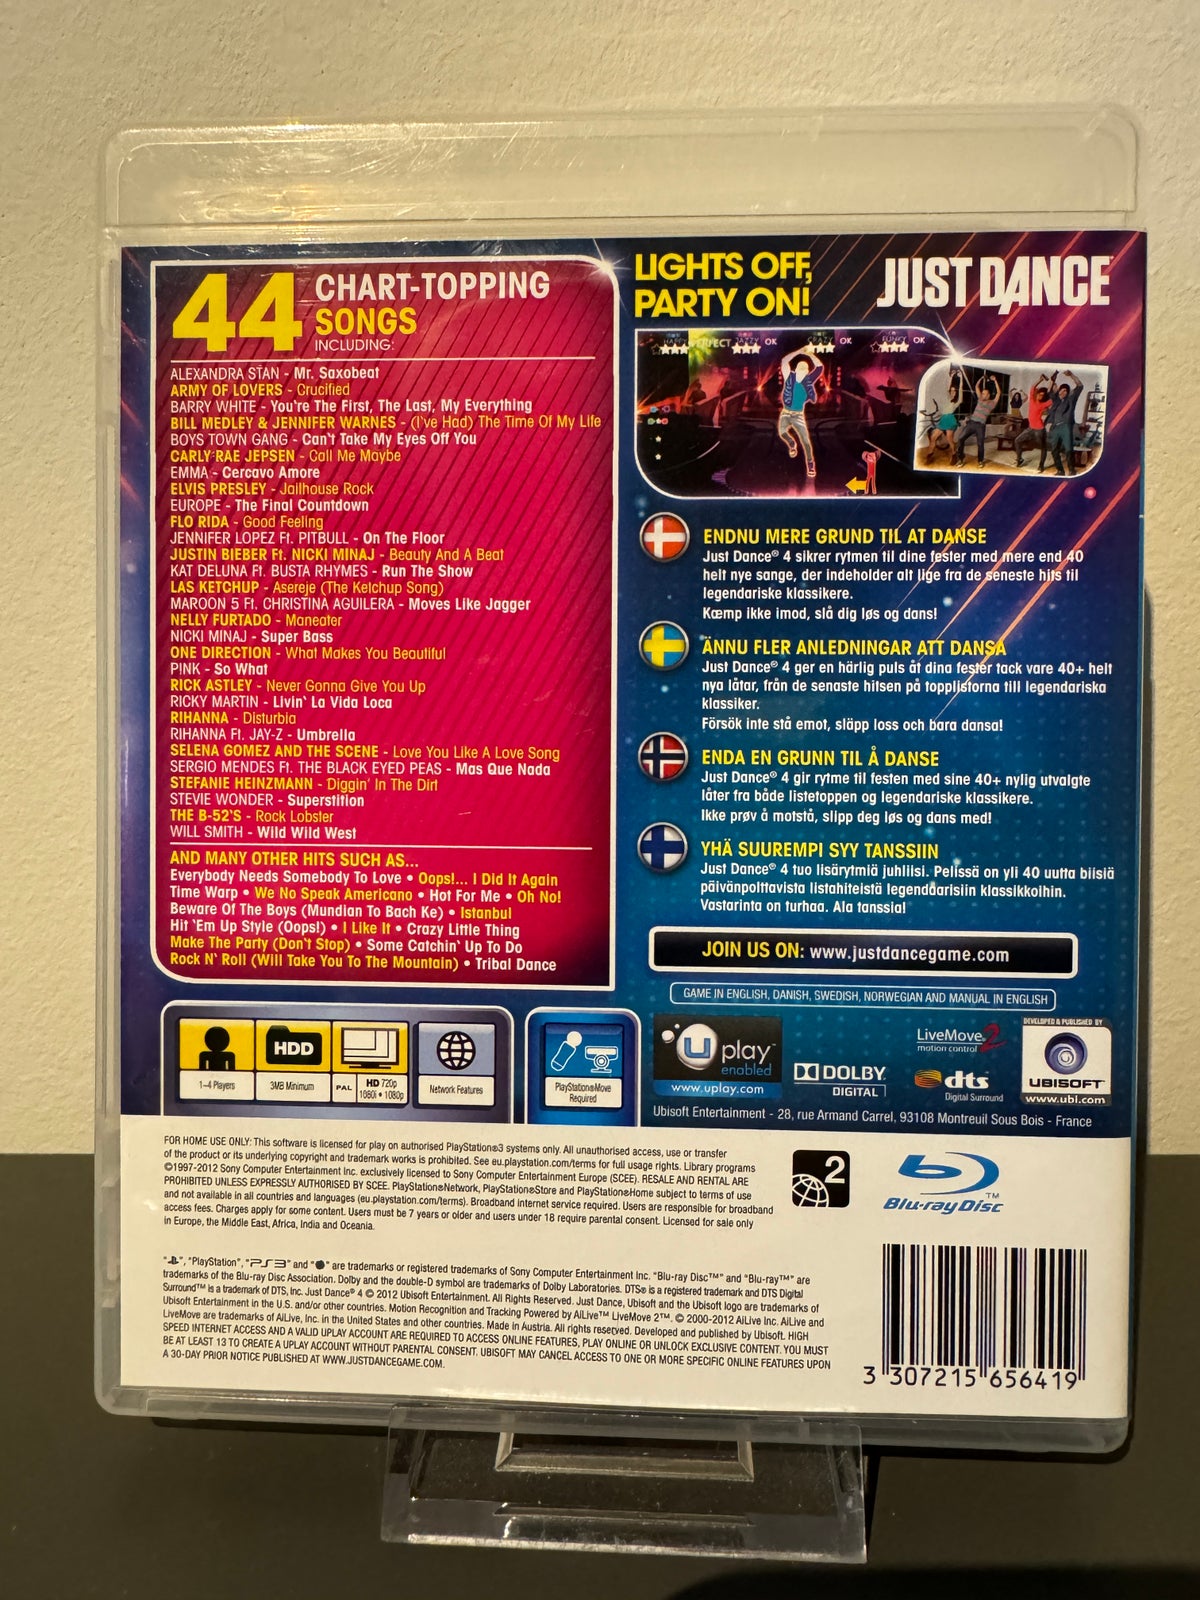 Just Dance 4, PS3, anden genre